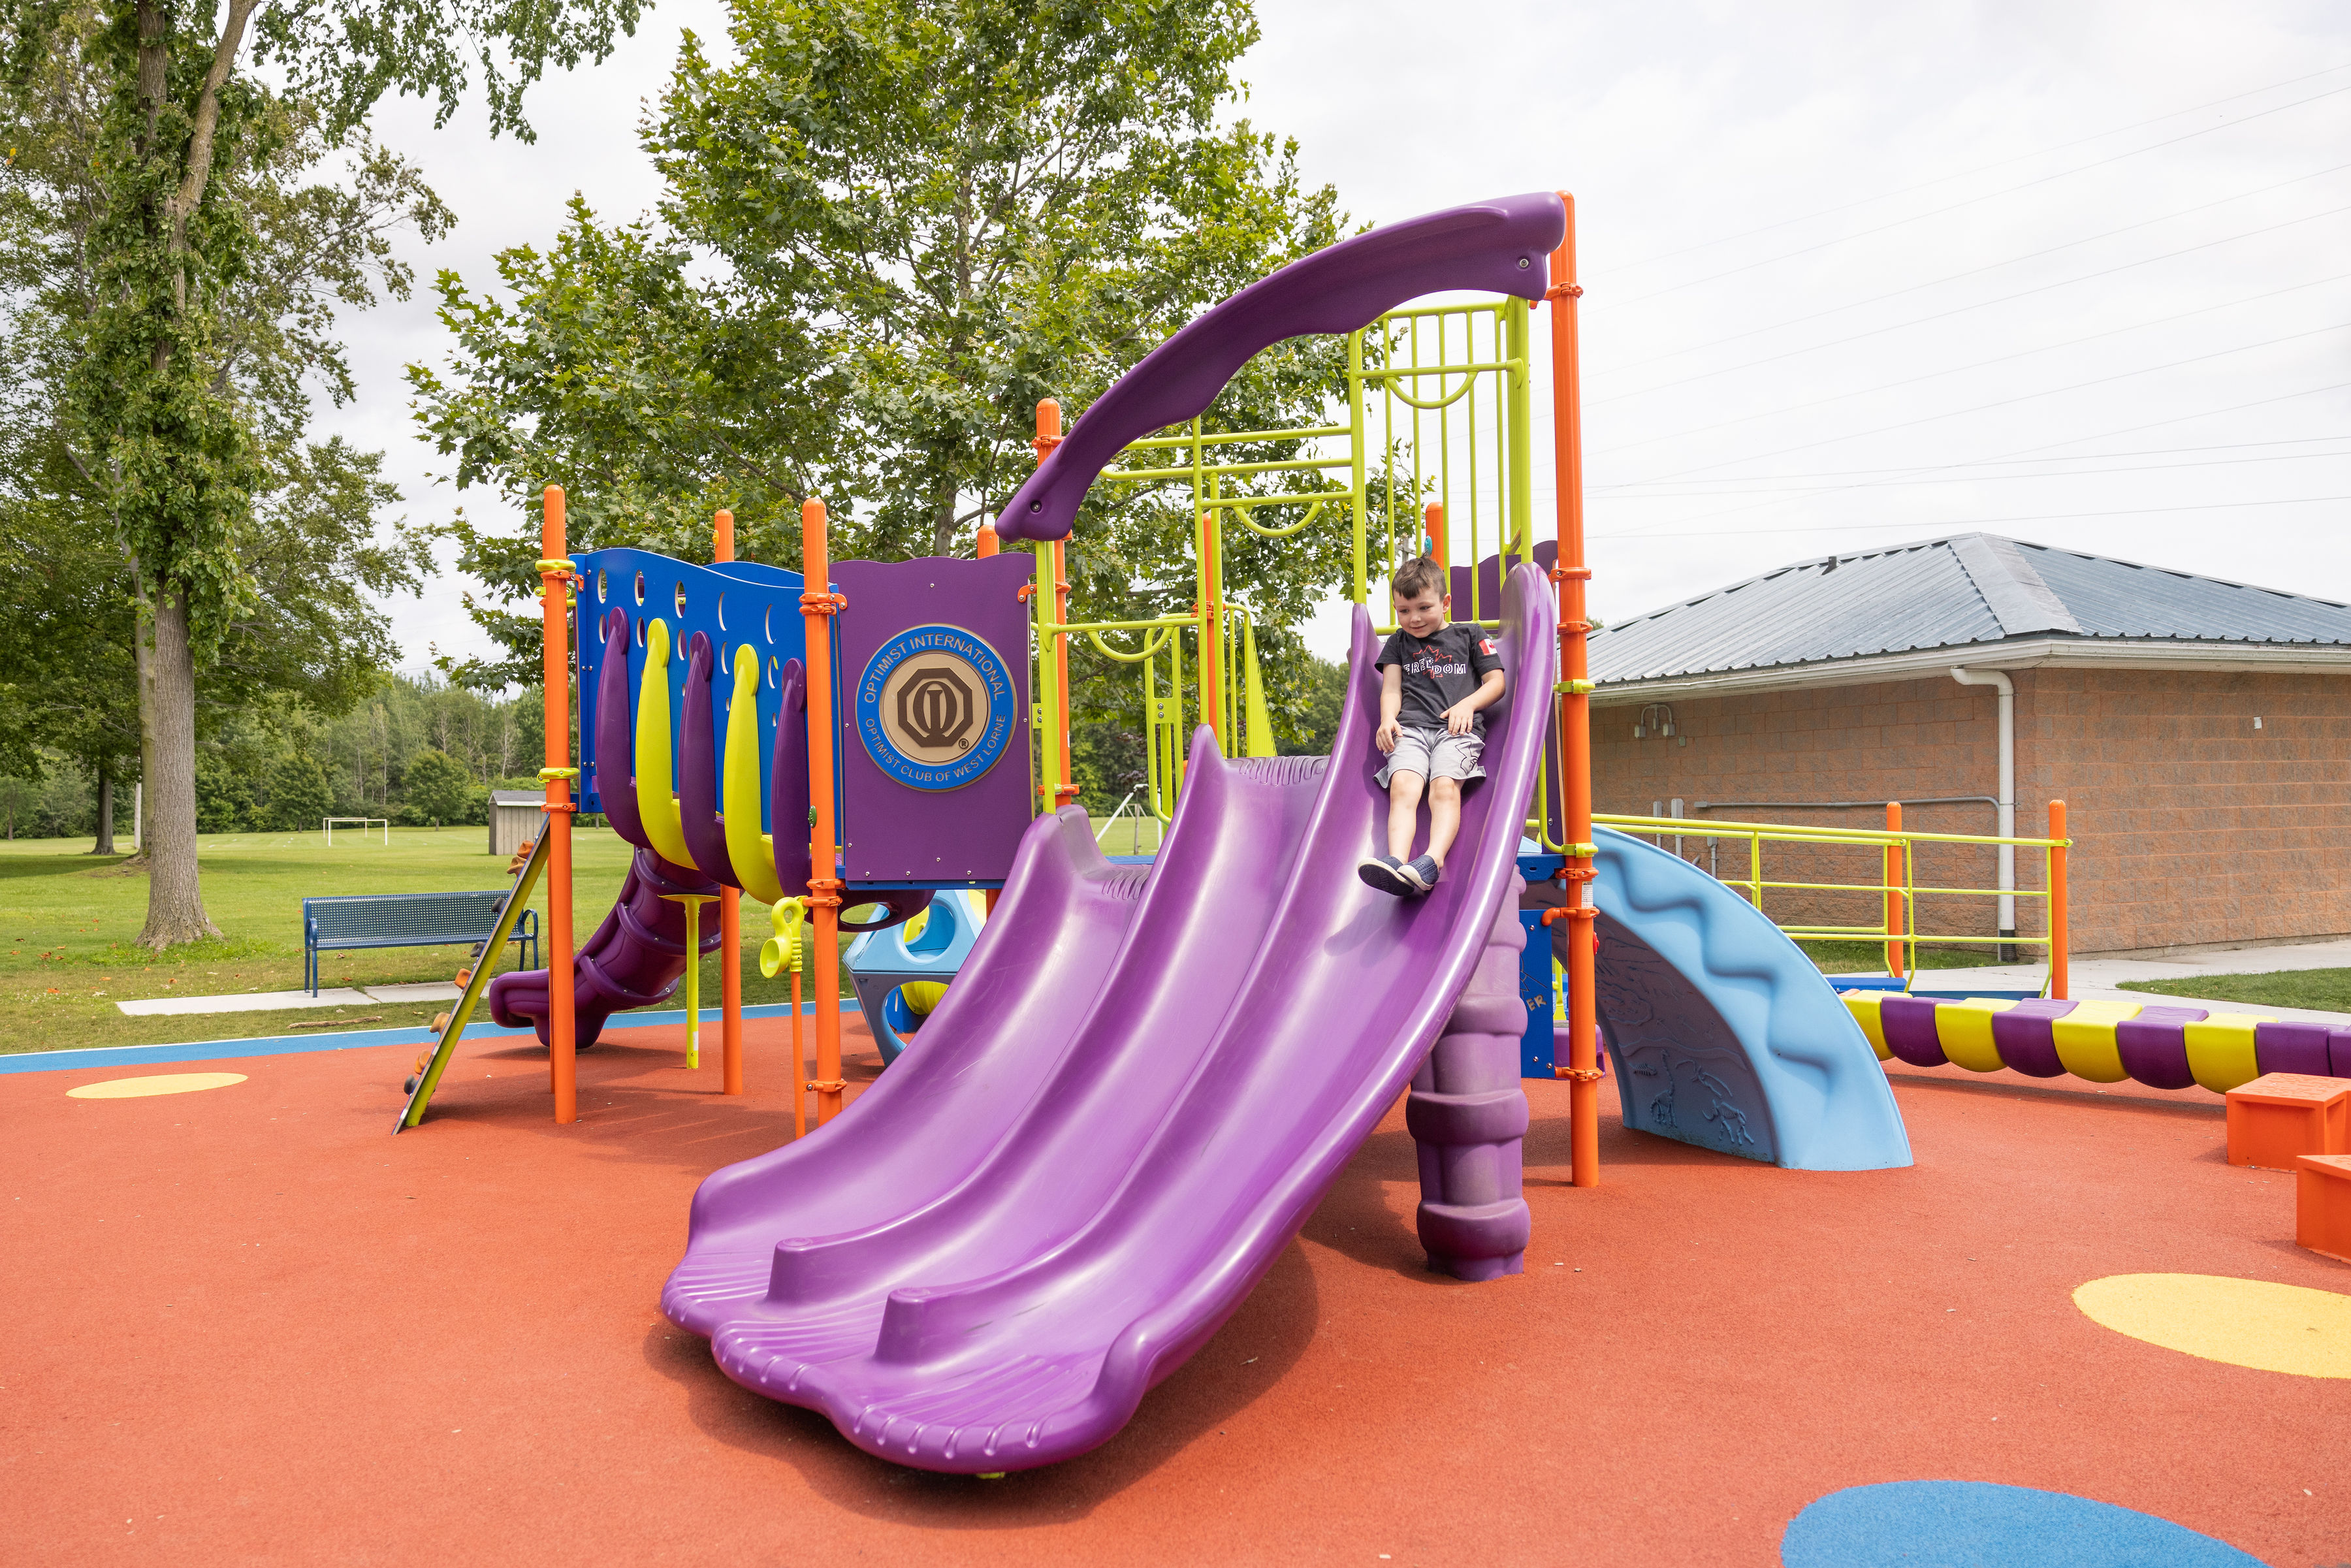 Slides and playground equipment